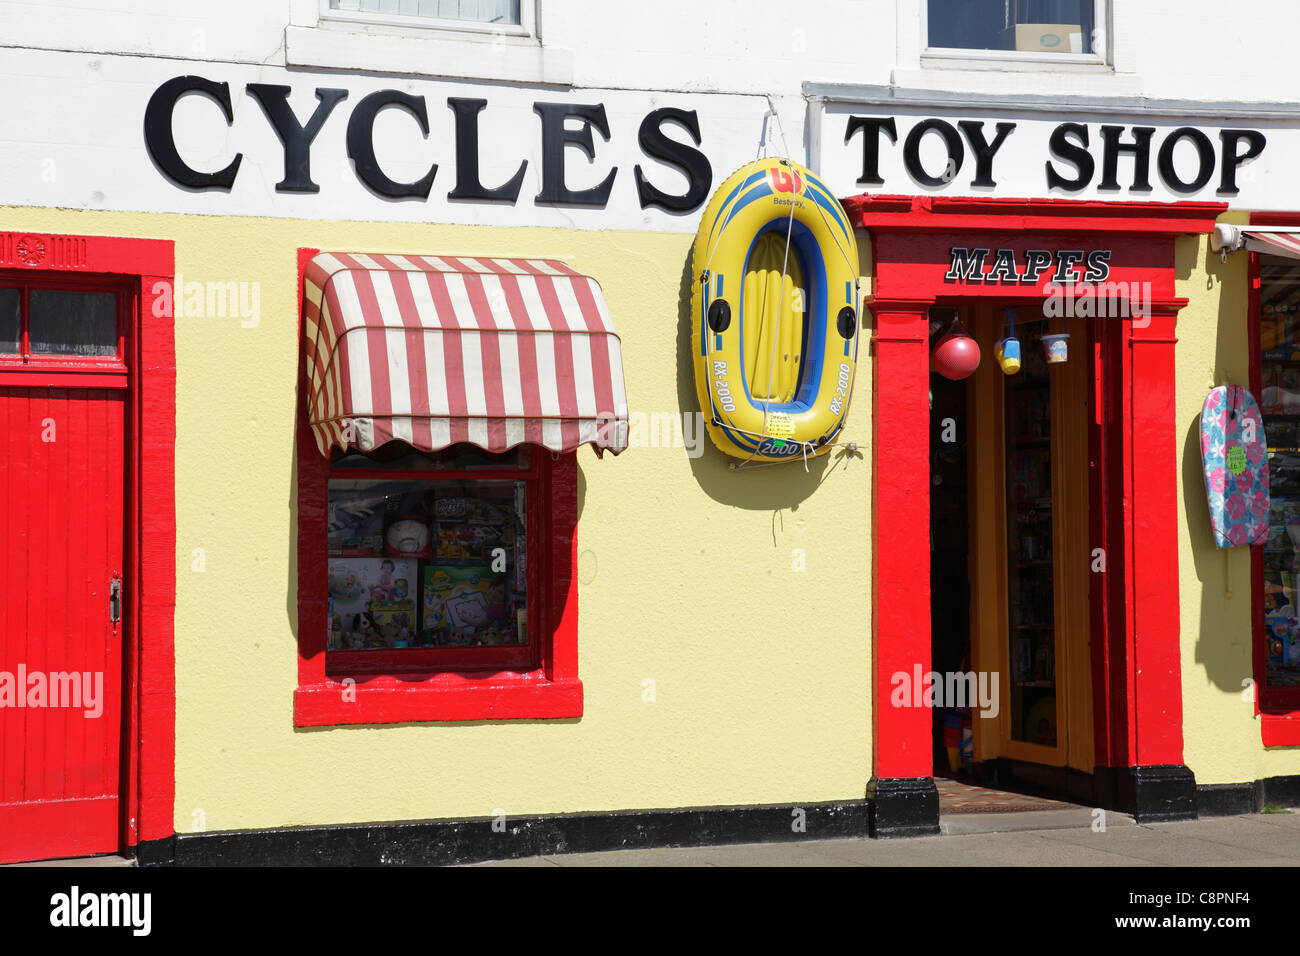 Mapes Location de vélos et magasin de jouets dans la ville de Millport sur l'île de Great Cumbrae, North Ayrshire, Écosse, Royaume-Uni Banque D'Images